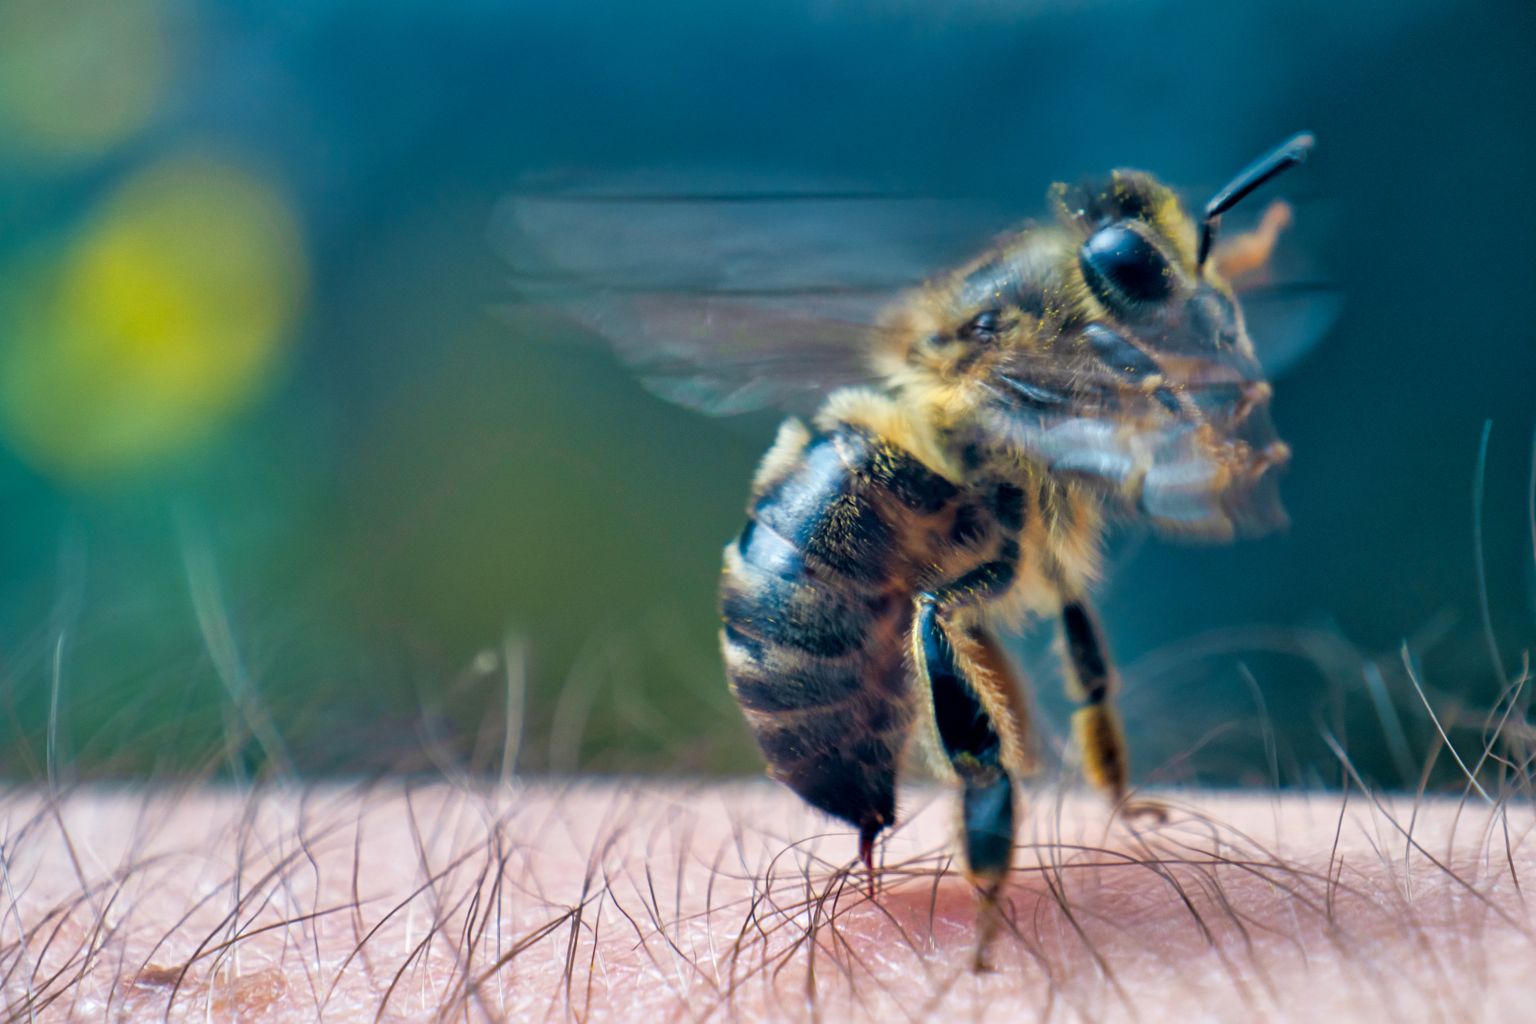 Mesilane jätab torkekohta nõela, herilane mitte – kui ta aga järsult eemale lüüa, võib ka herilase nõel torkekohta jääda. Oluline on nõel ettevaatlikult eemaldada.